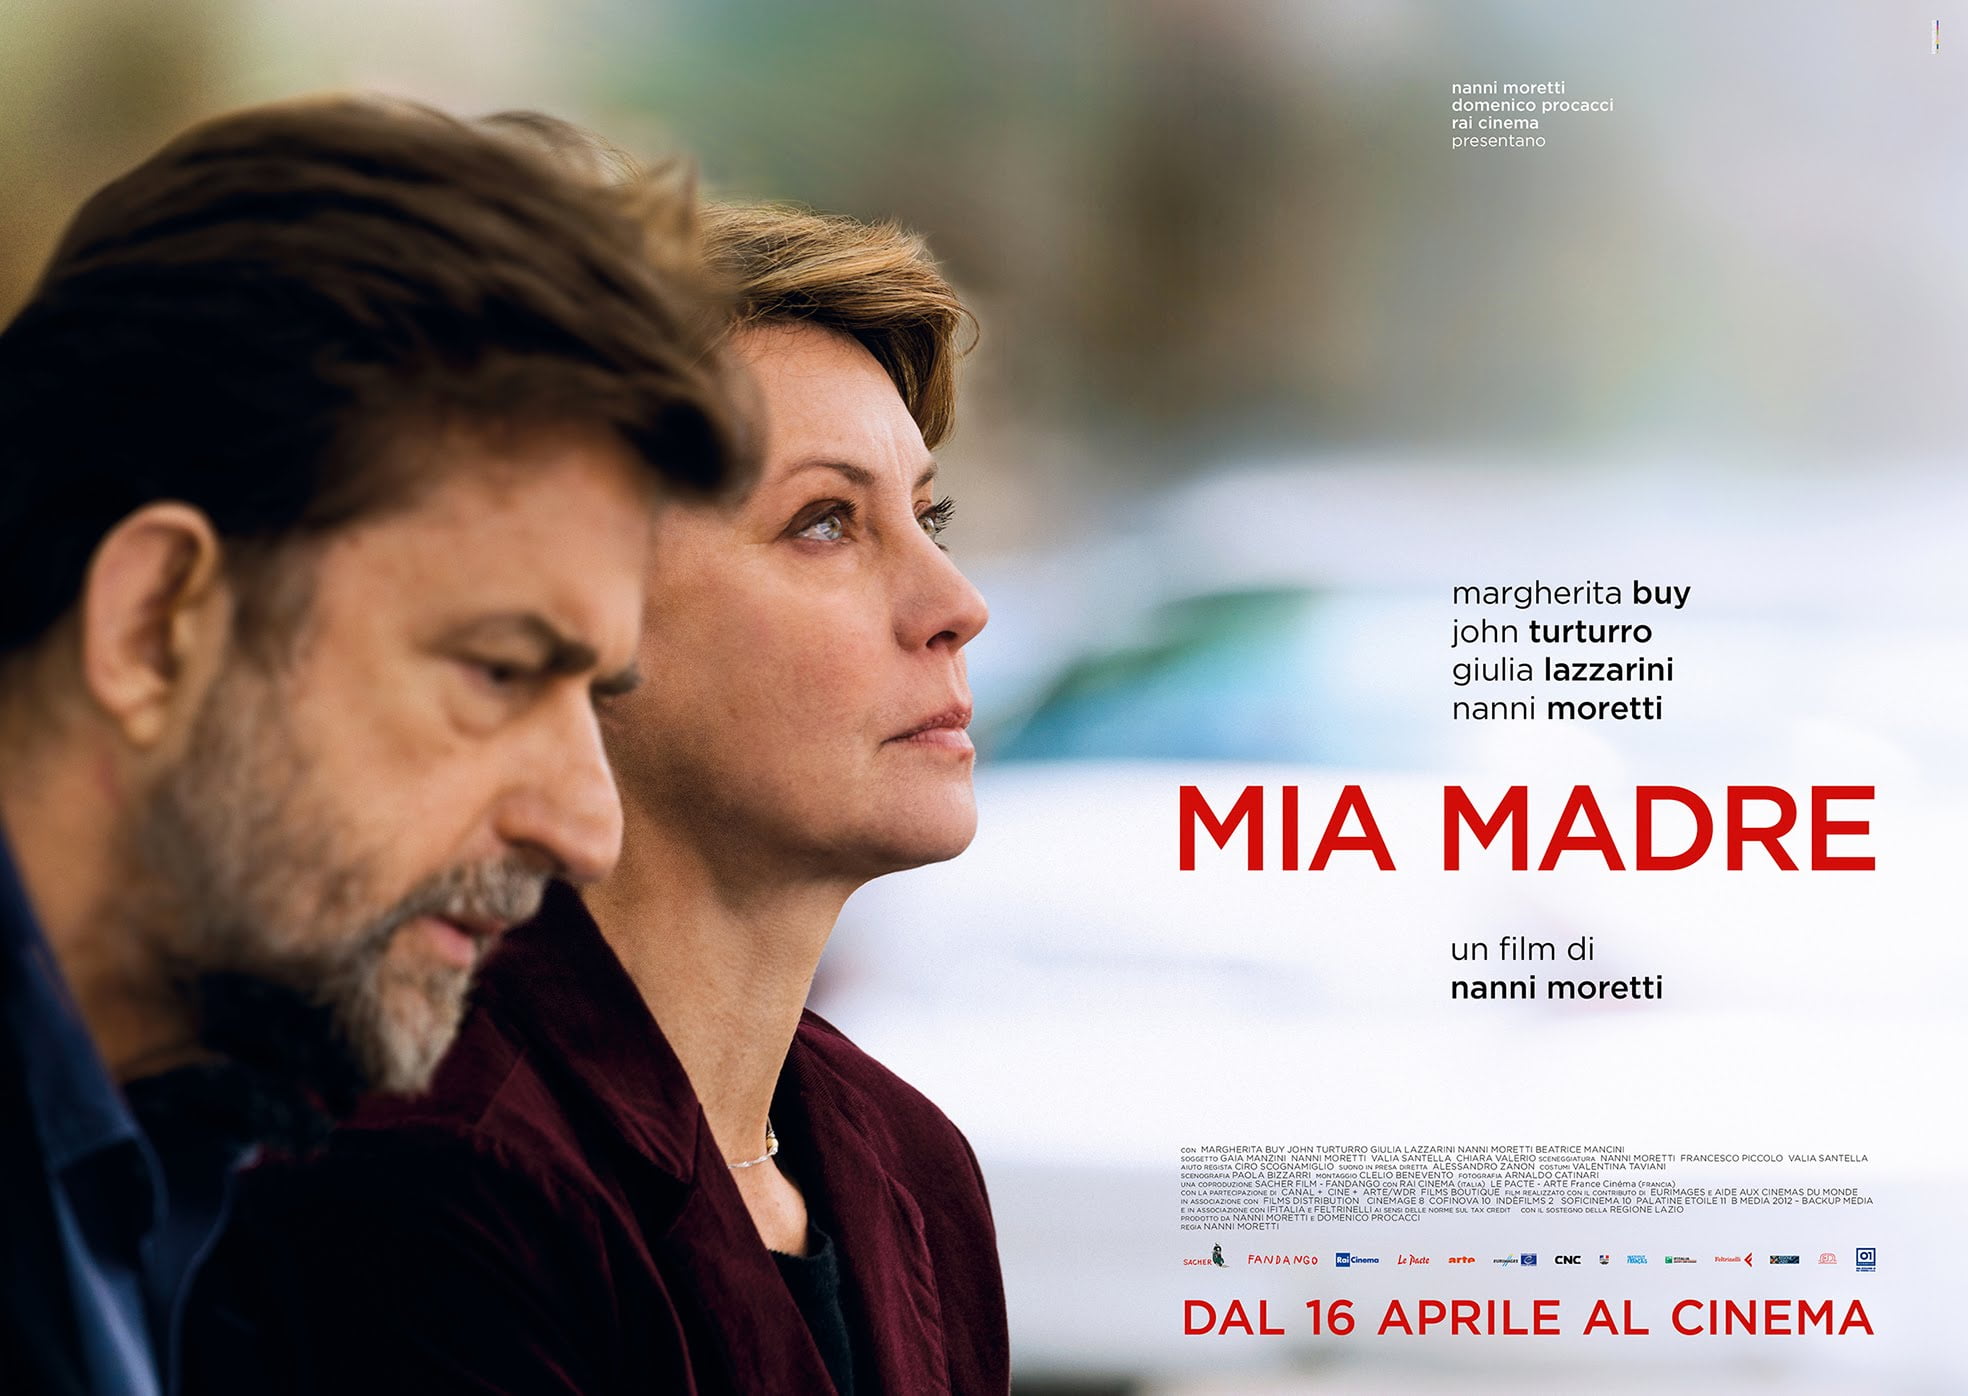 Mia Madre movie poster HD wallpaper | Wallpaper Flare